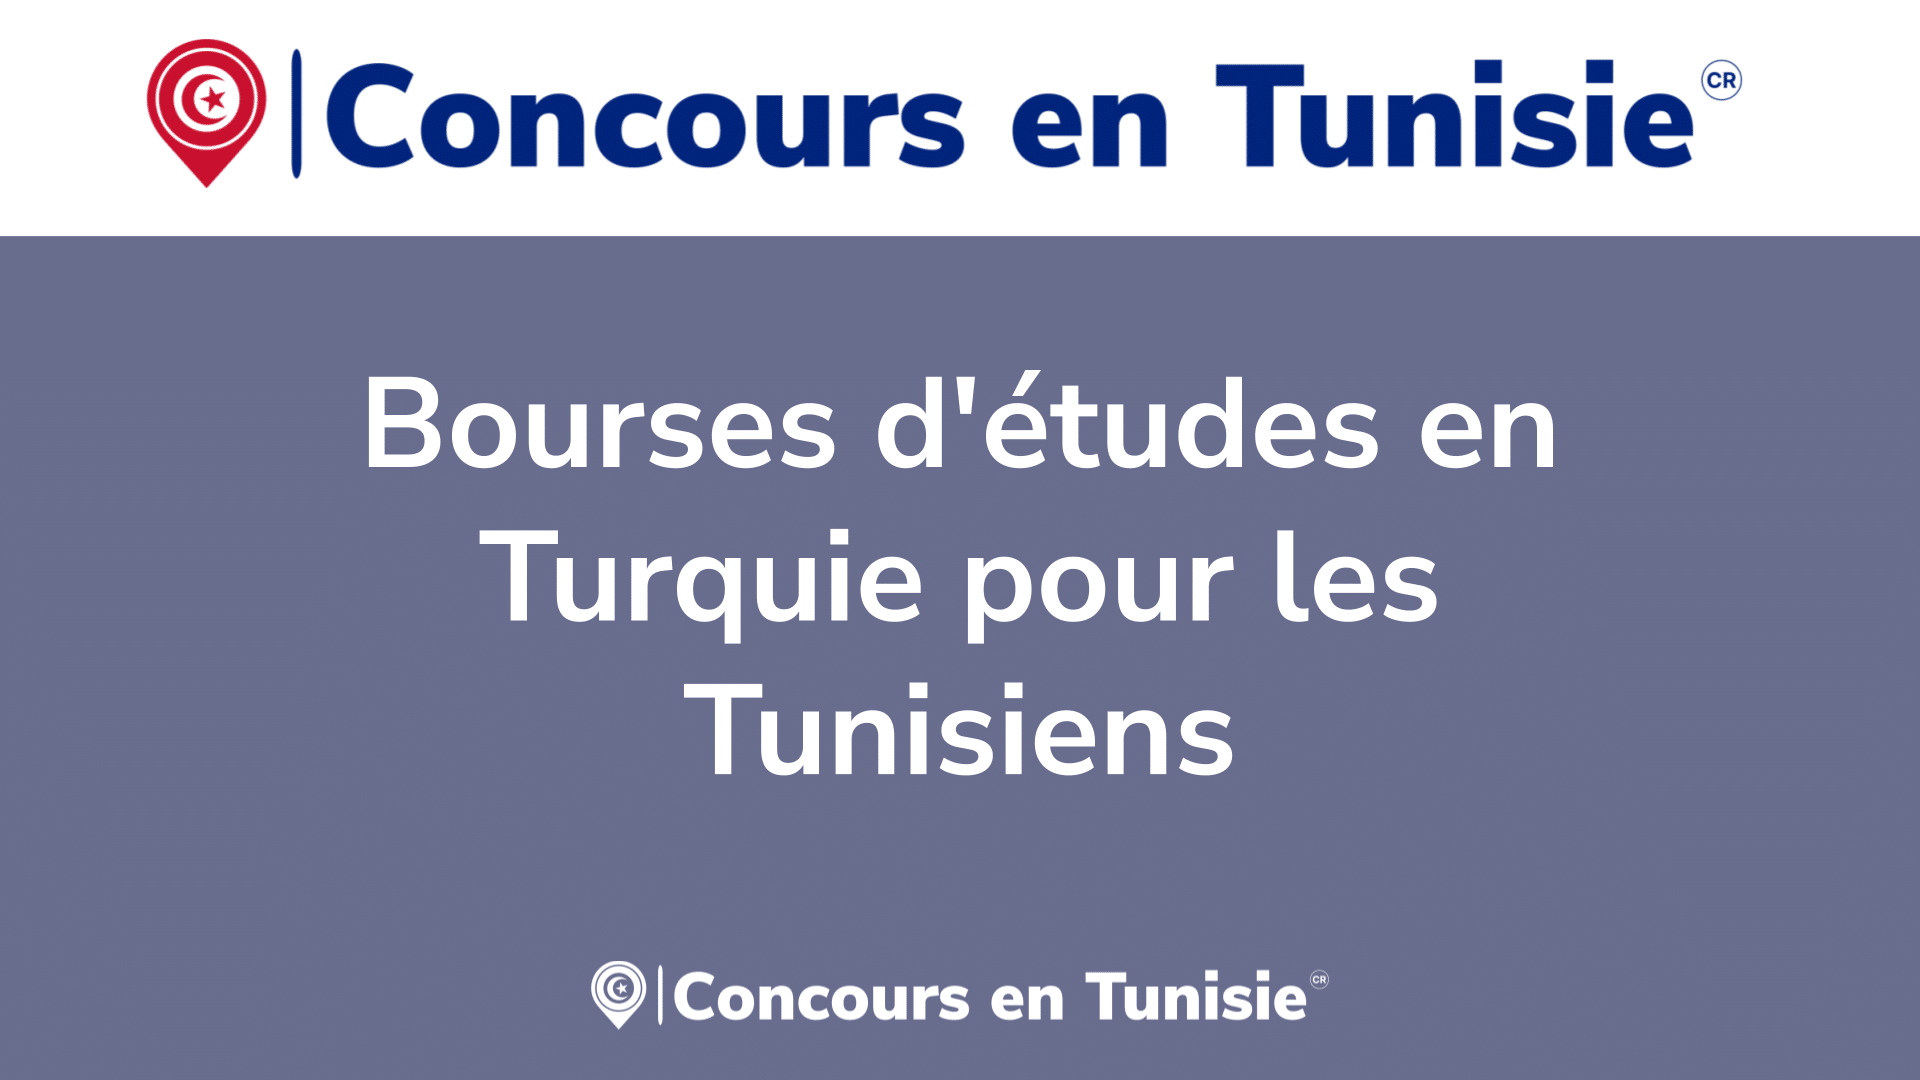 Bourses d'études en Turquie pour les Tunisiens